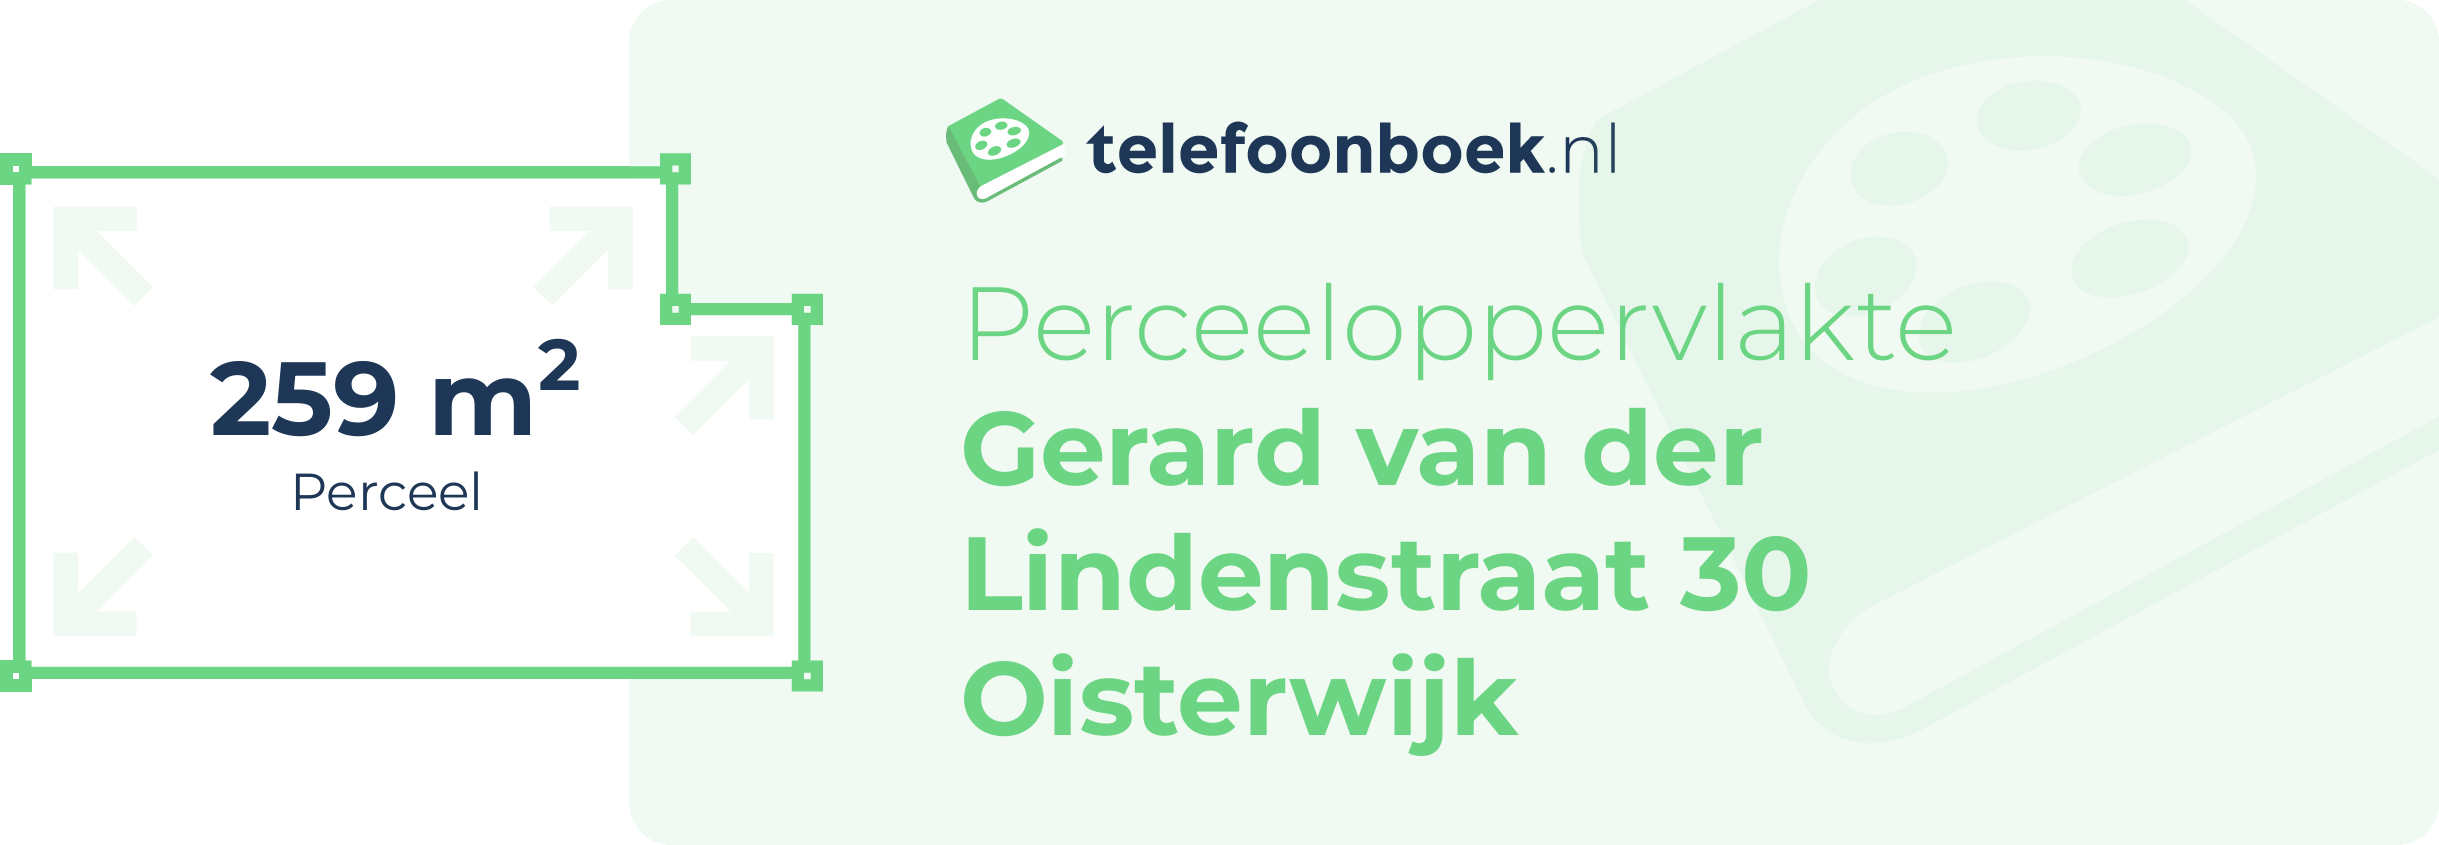 Perceeloppervlakte Gerard Van Der Lindenstraat 30 Oisterwijk